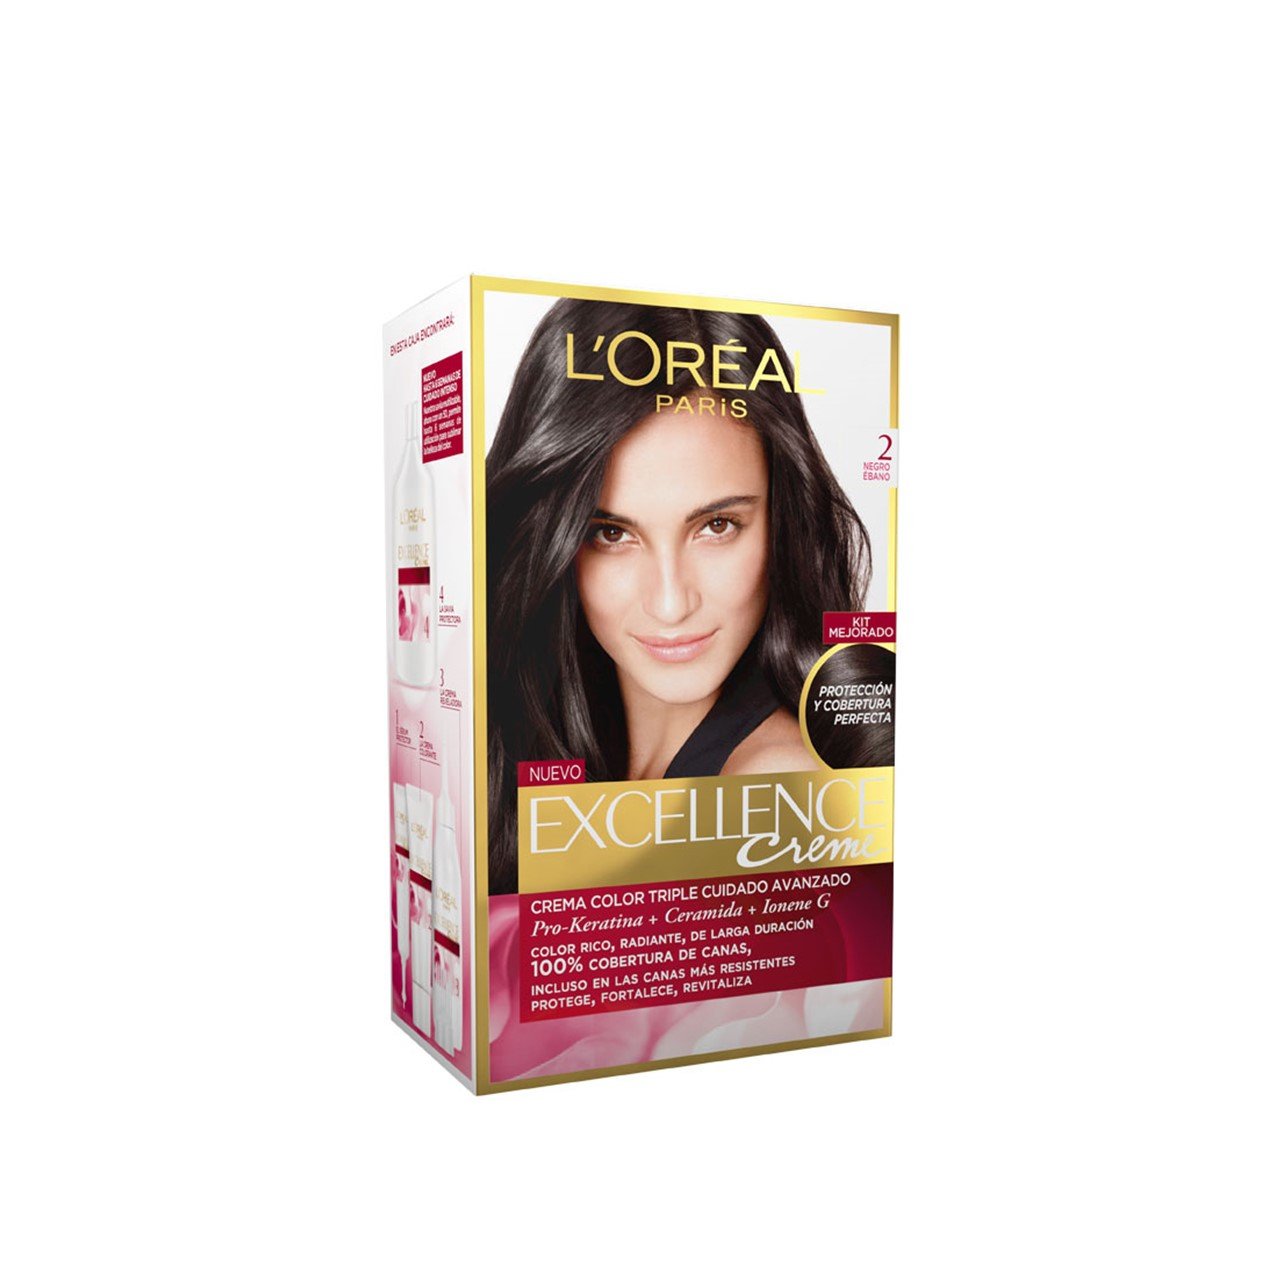 Buy L'Oréal Paris Excellence Creme 2 Black Brown Hair Dye · Sweden